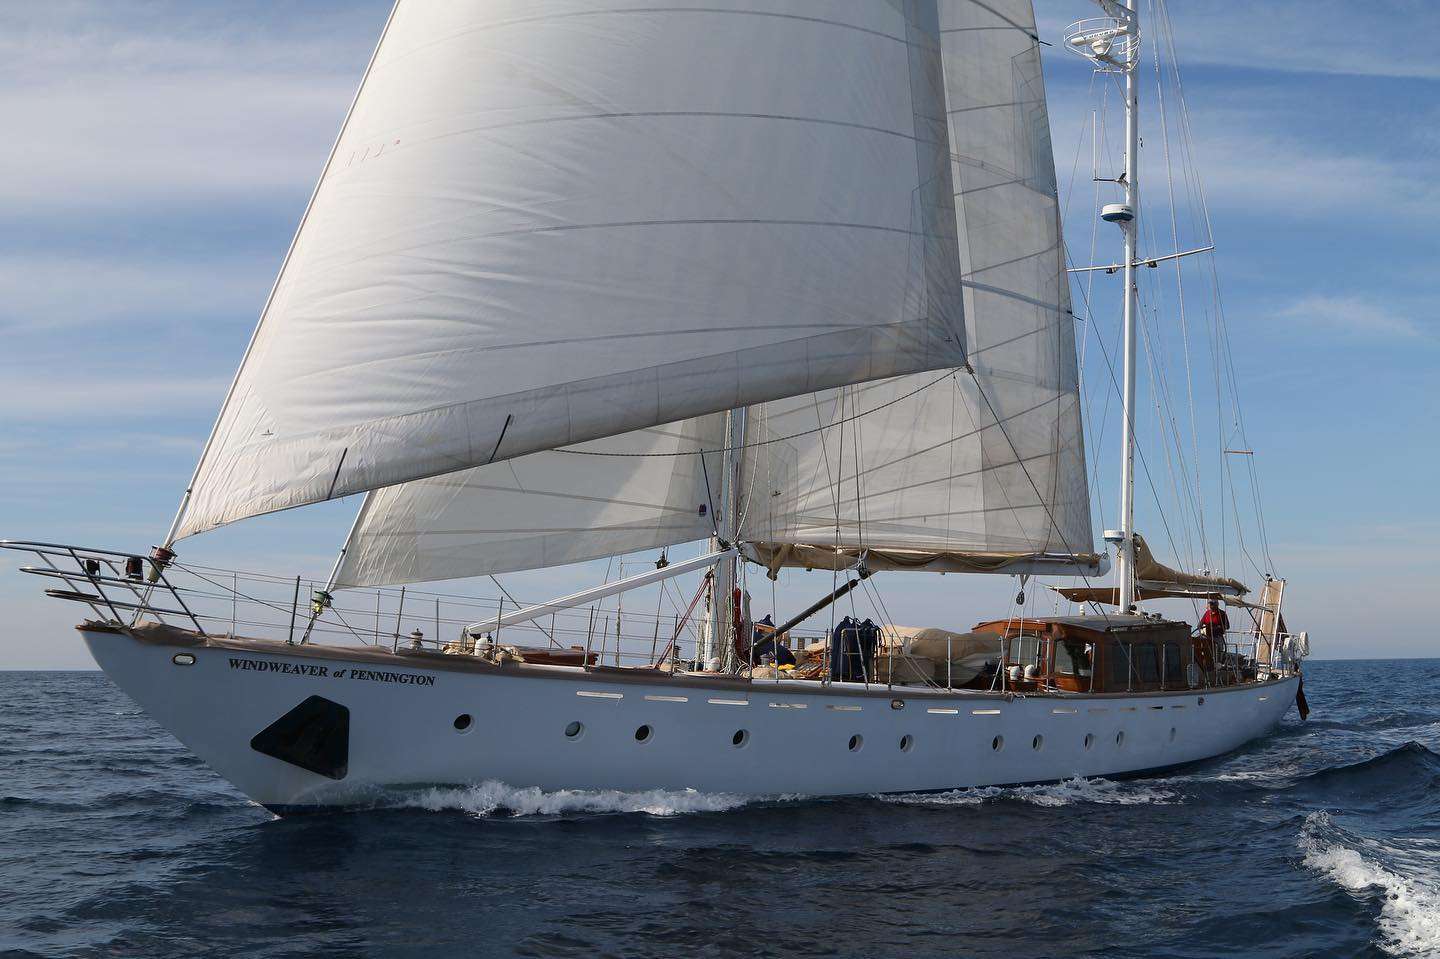 WINDWEAVER OF PENNINGTON - Yacht Charter Kassandra & Boat hire in Greece 1